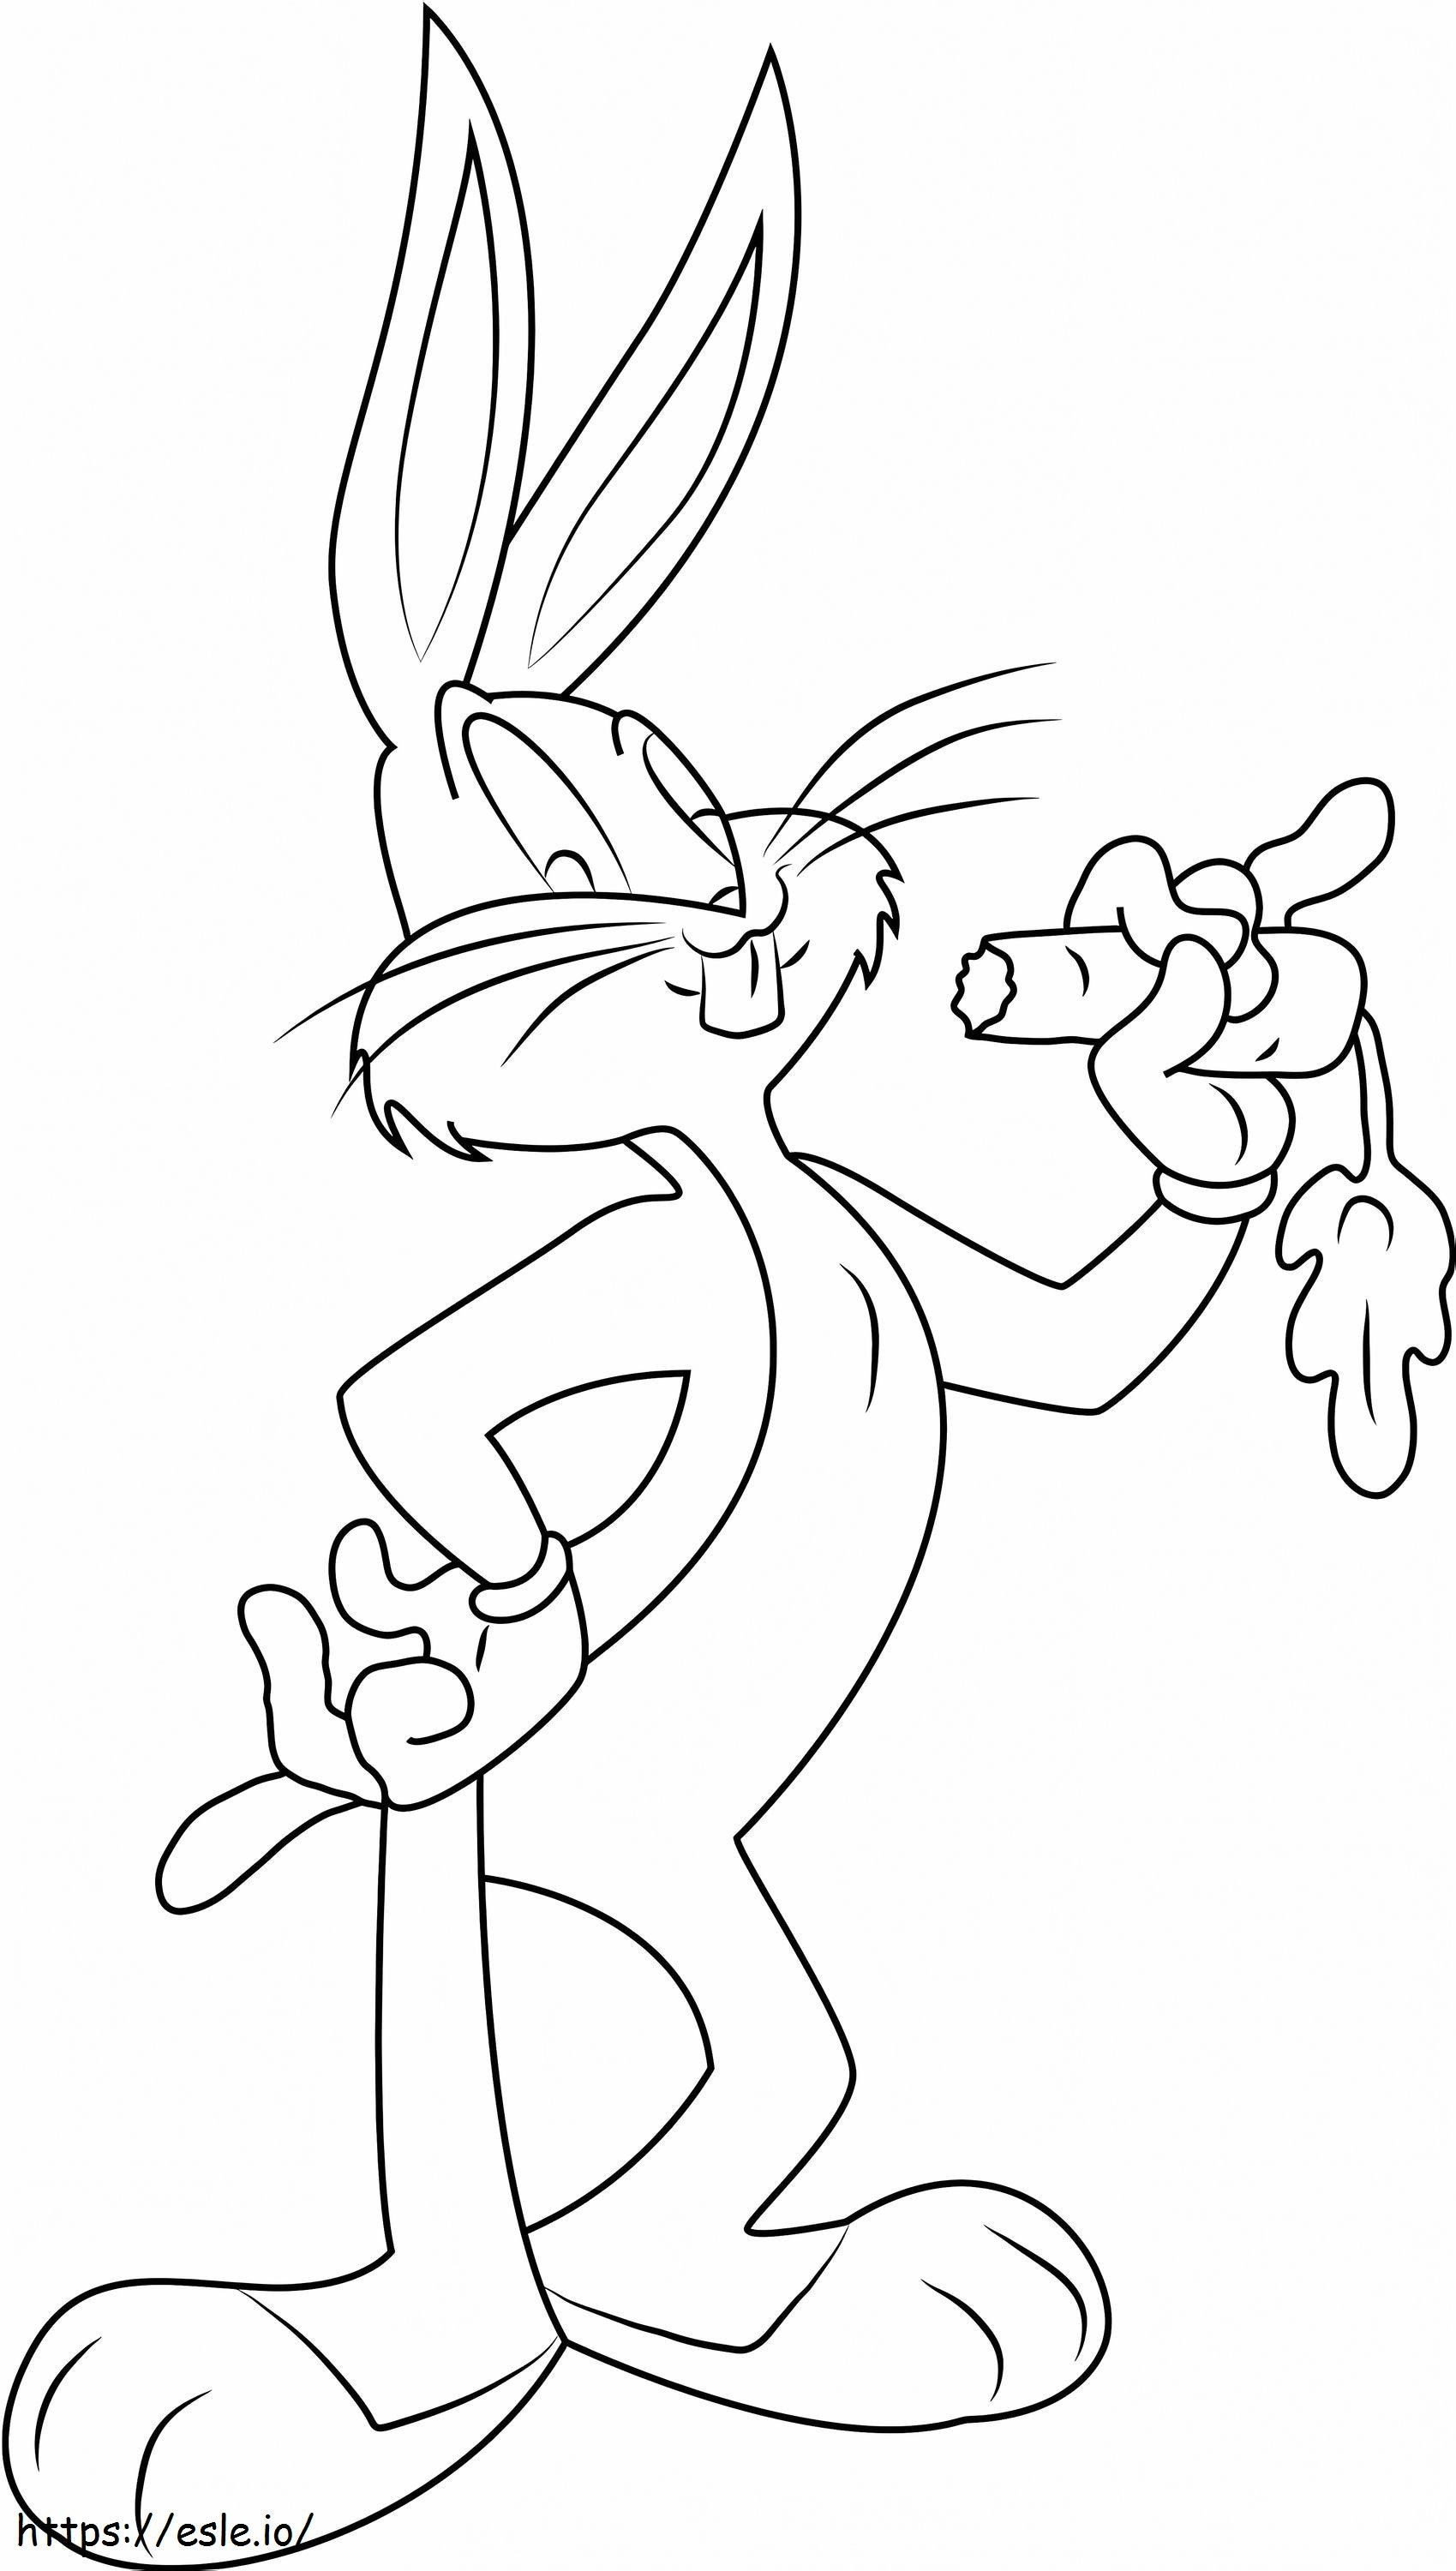 Coloriage  Bugs Bunny mangeant des carottes1 à imprimer dessin